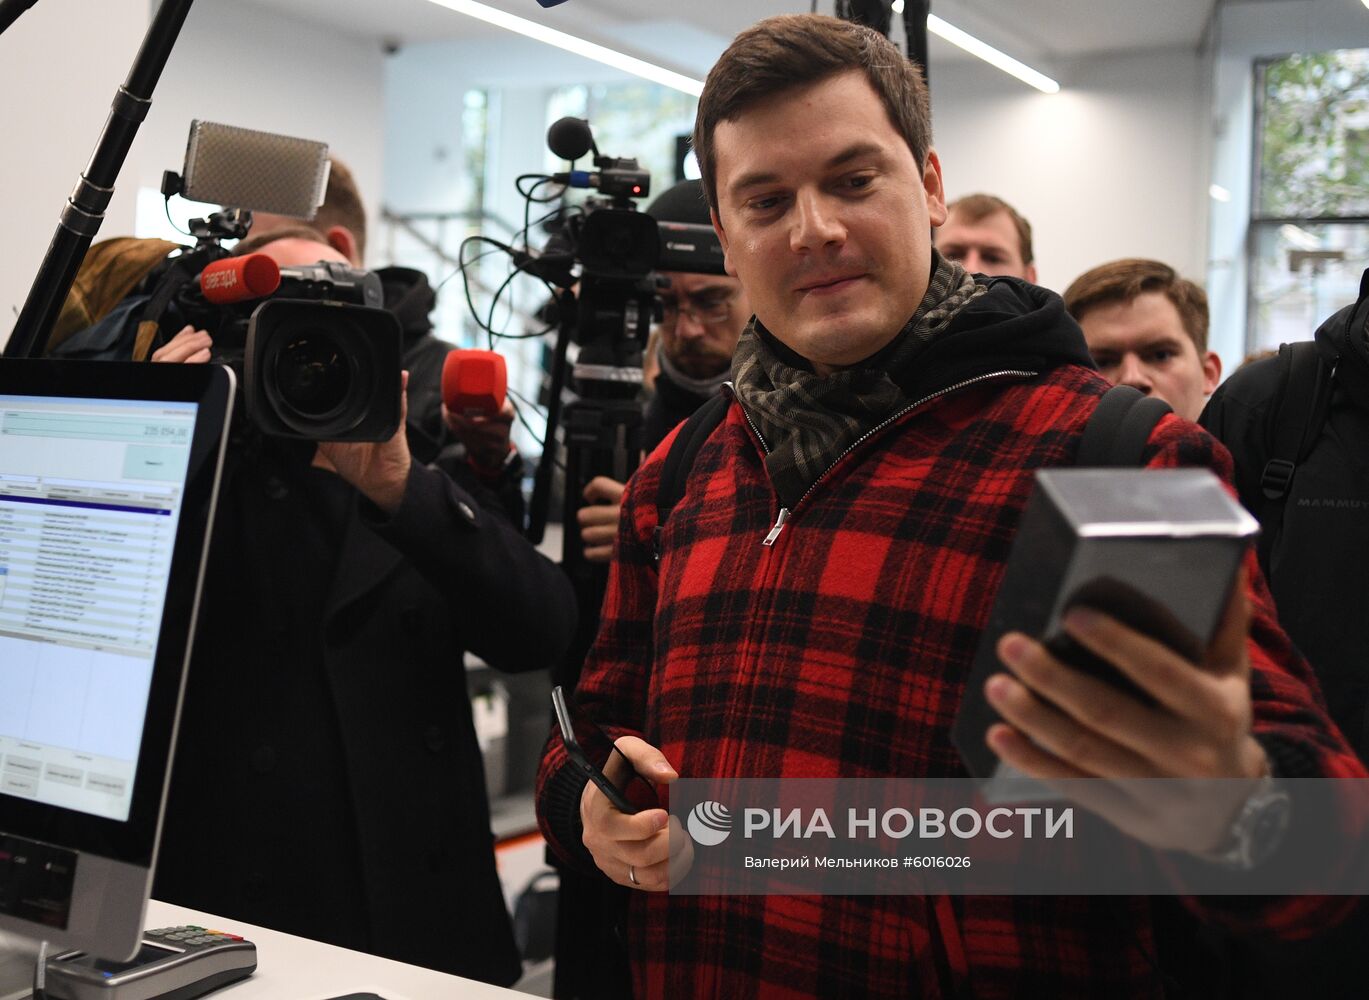 Старт продаж новых iPhone в России